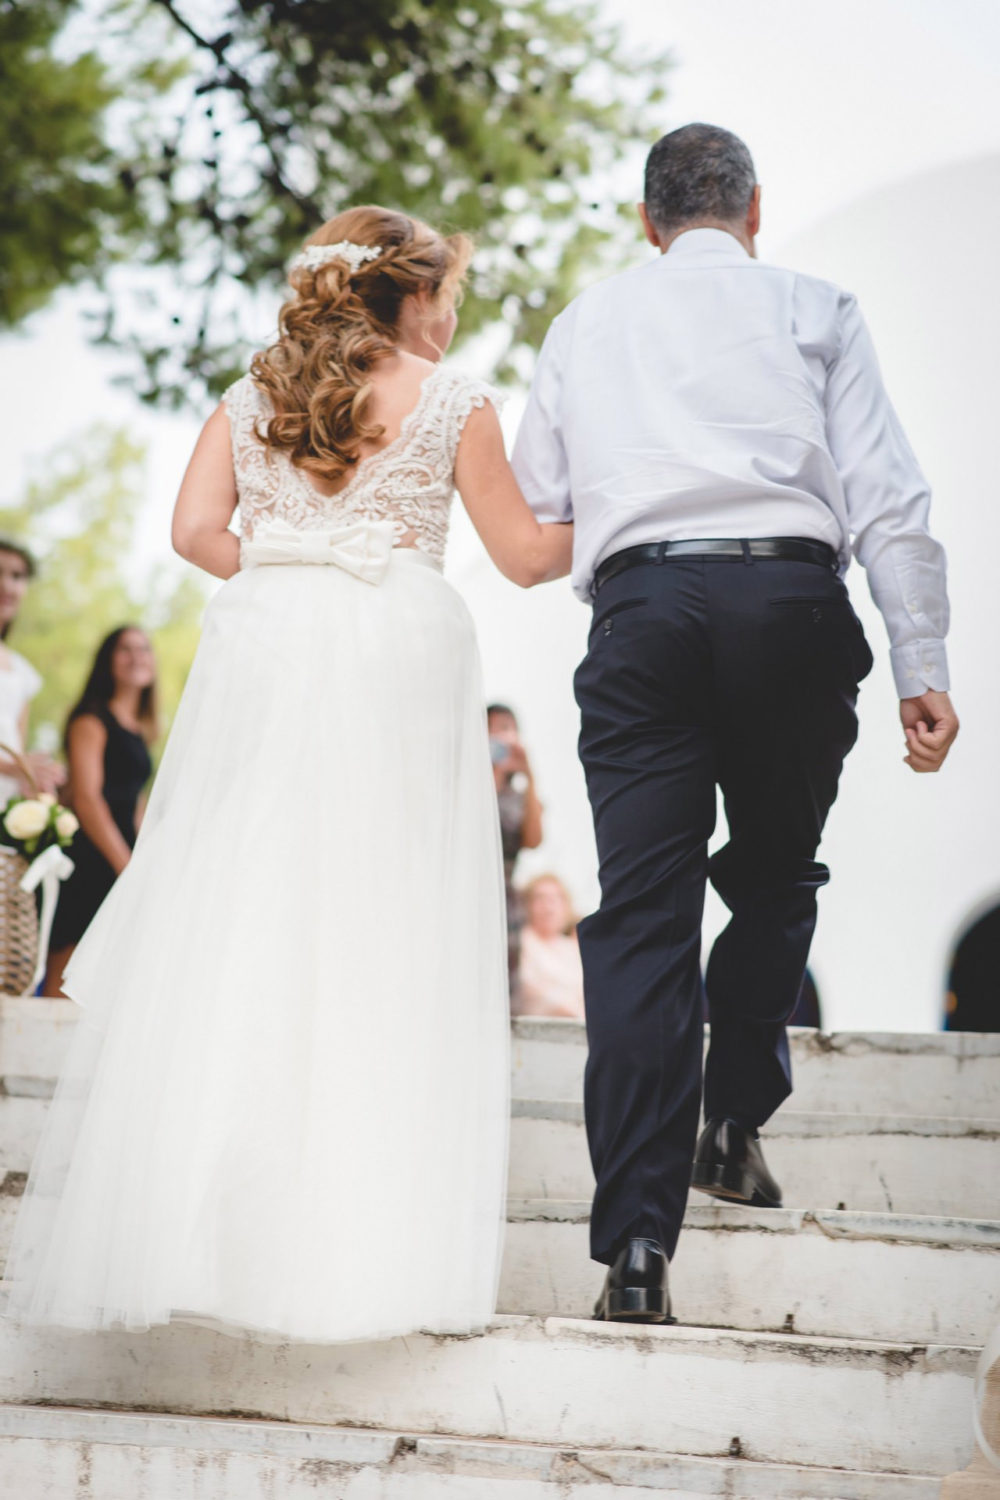 Fotografisi Gamou Wedding Gamos Fotografos Kostas&efi 020